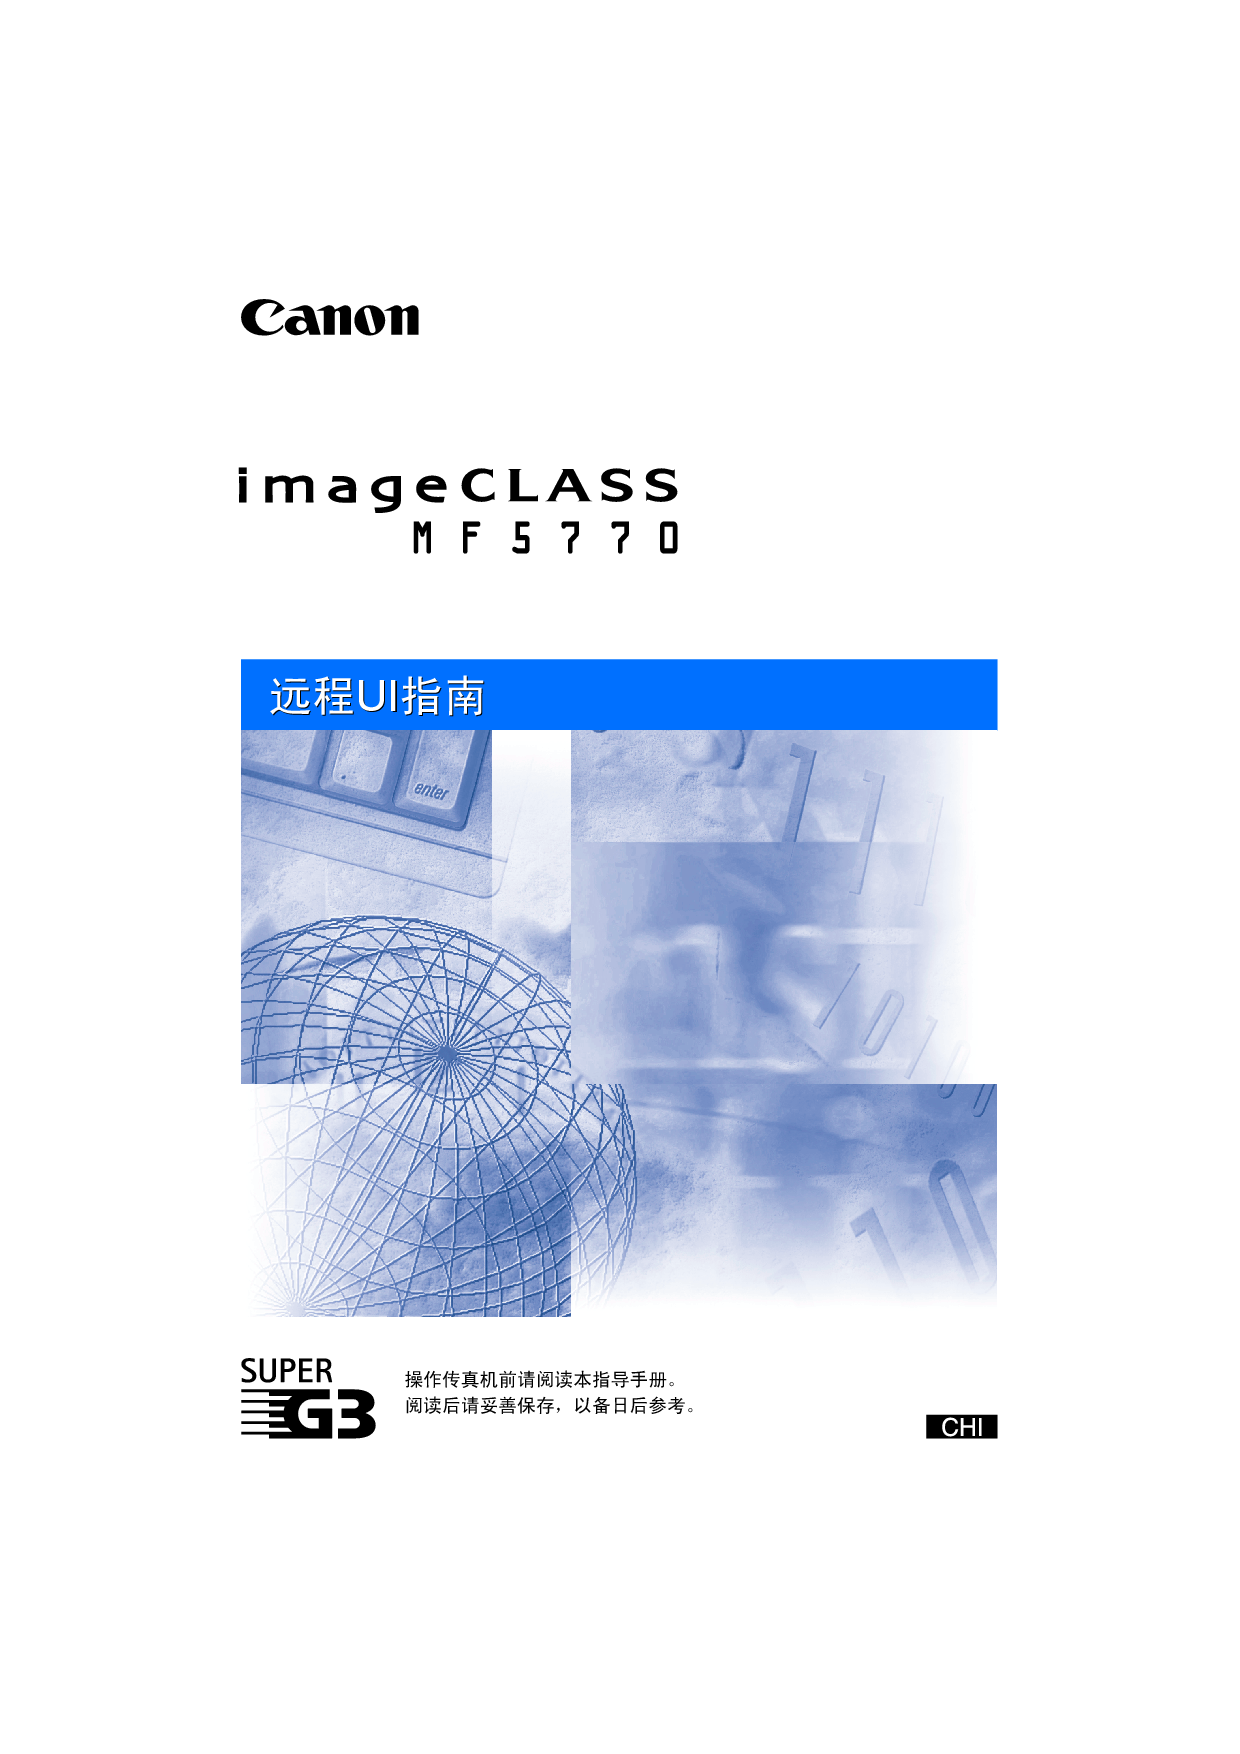 佳能 Canon imageClass MF5770 远程用户界面 用户指南 封面